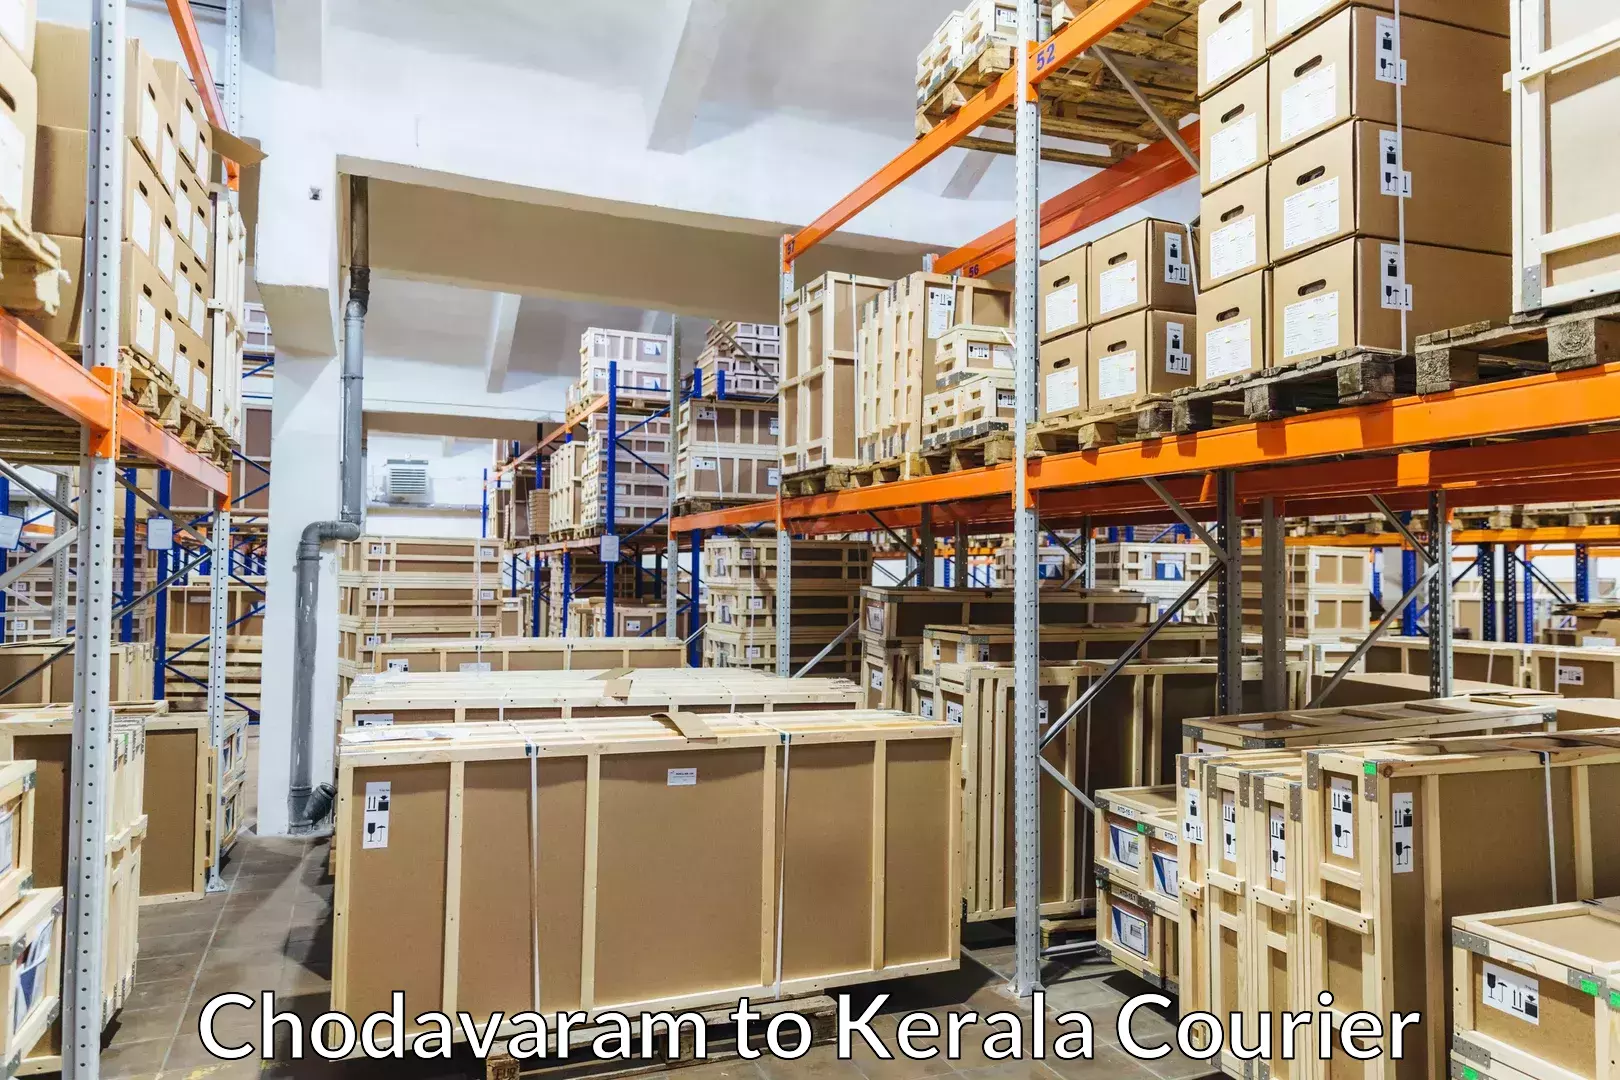 Furniture delivery service Chodavaram to Parakkadavu